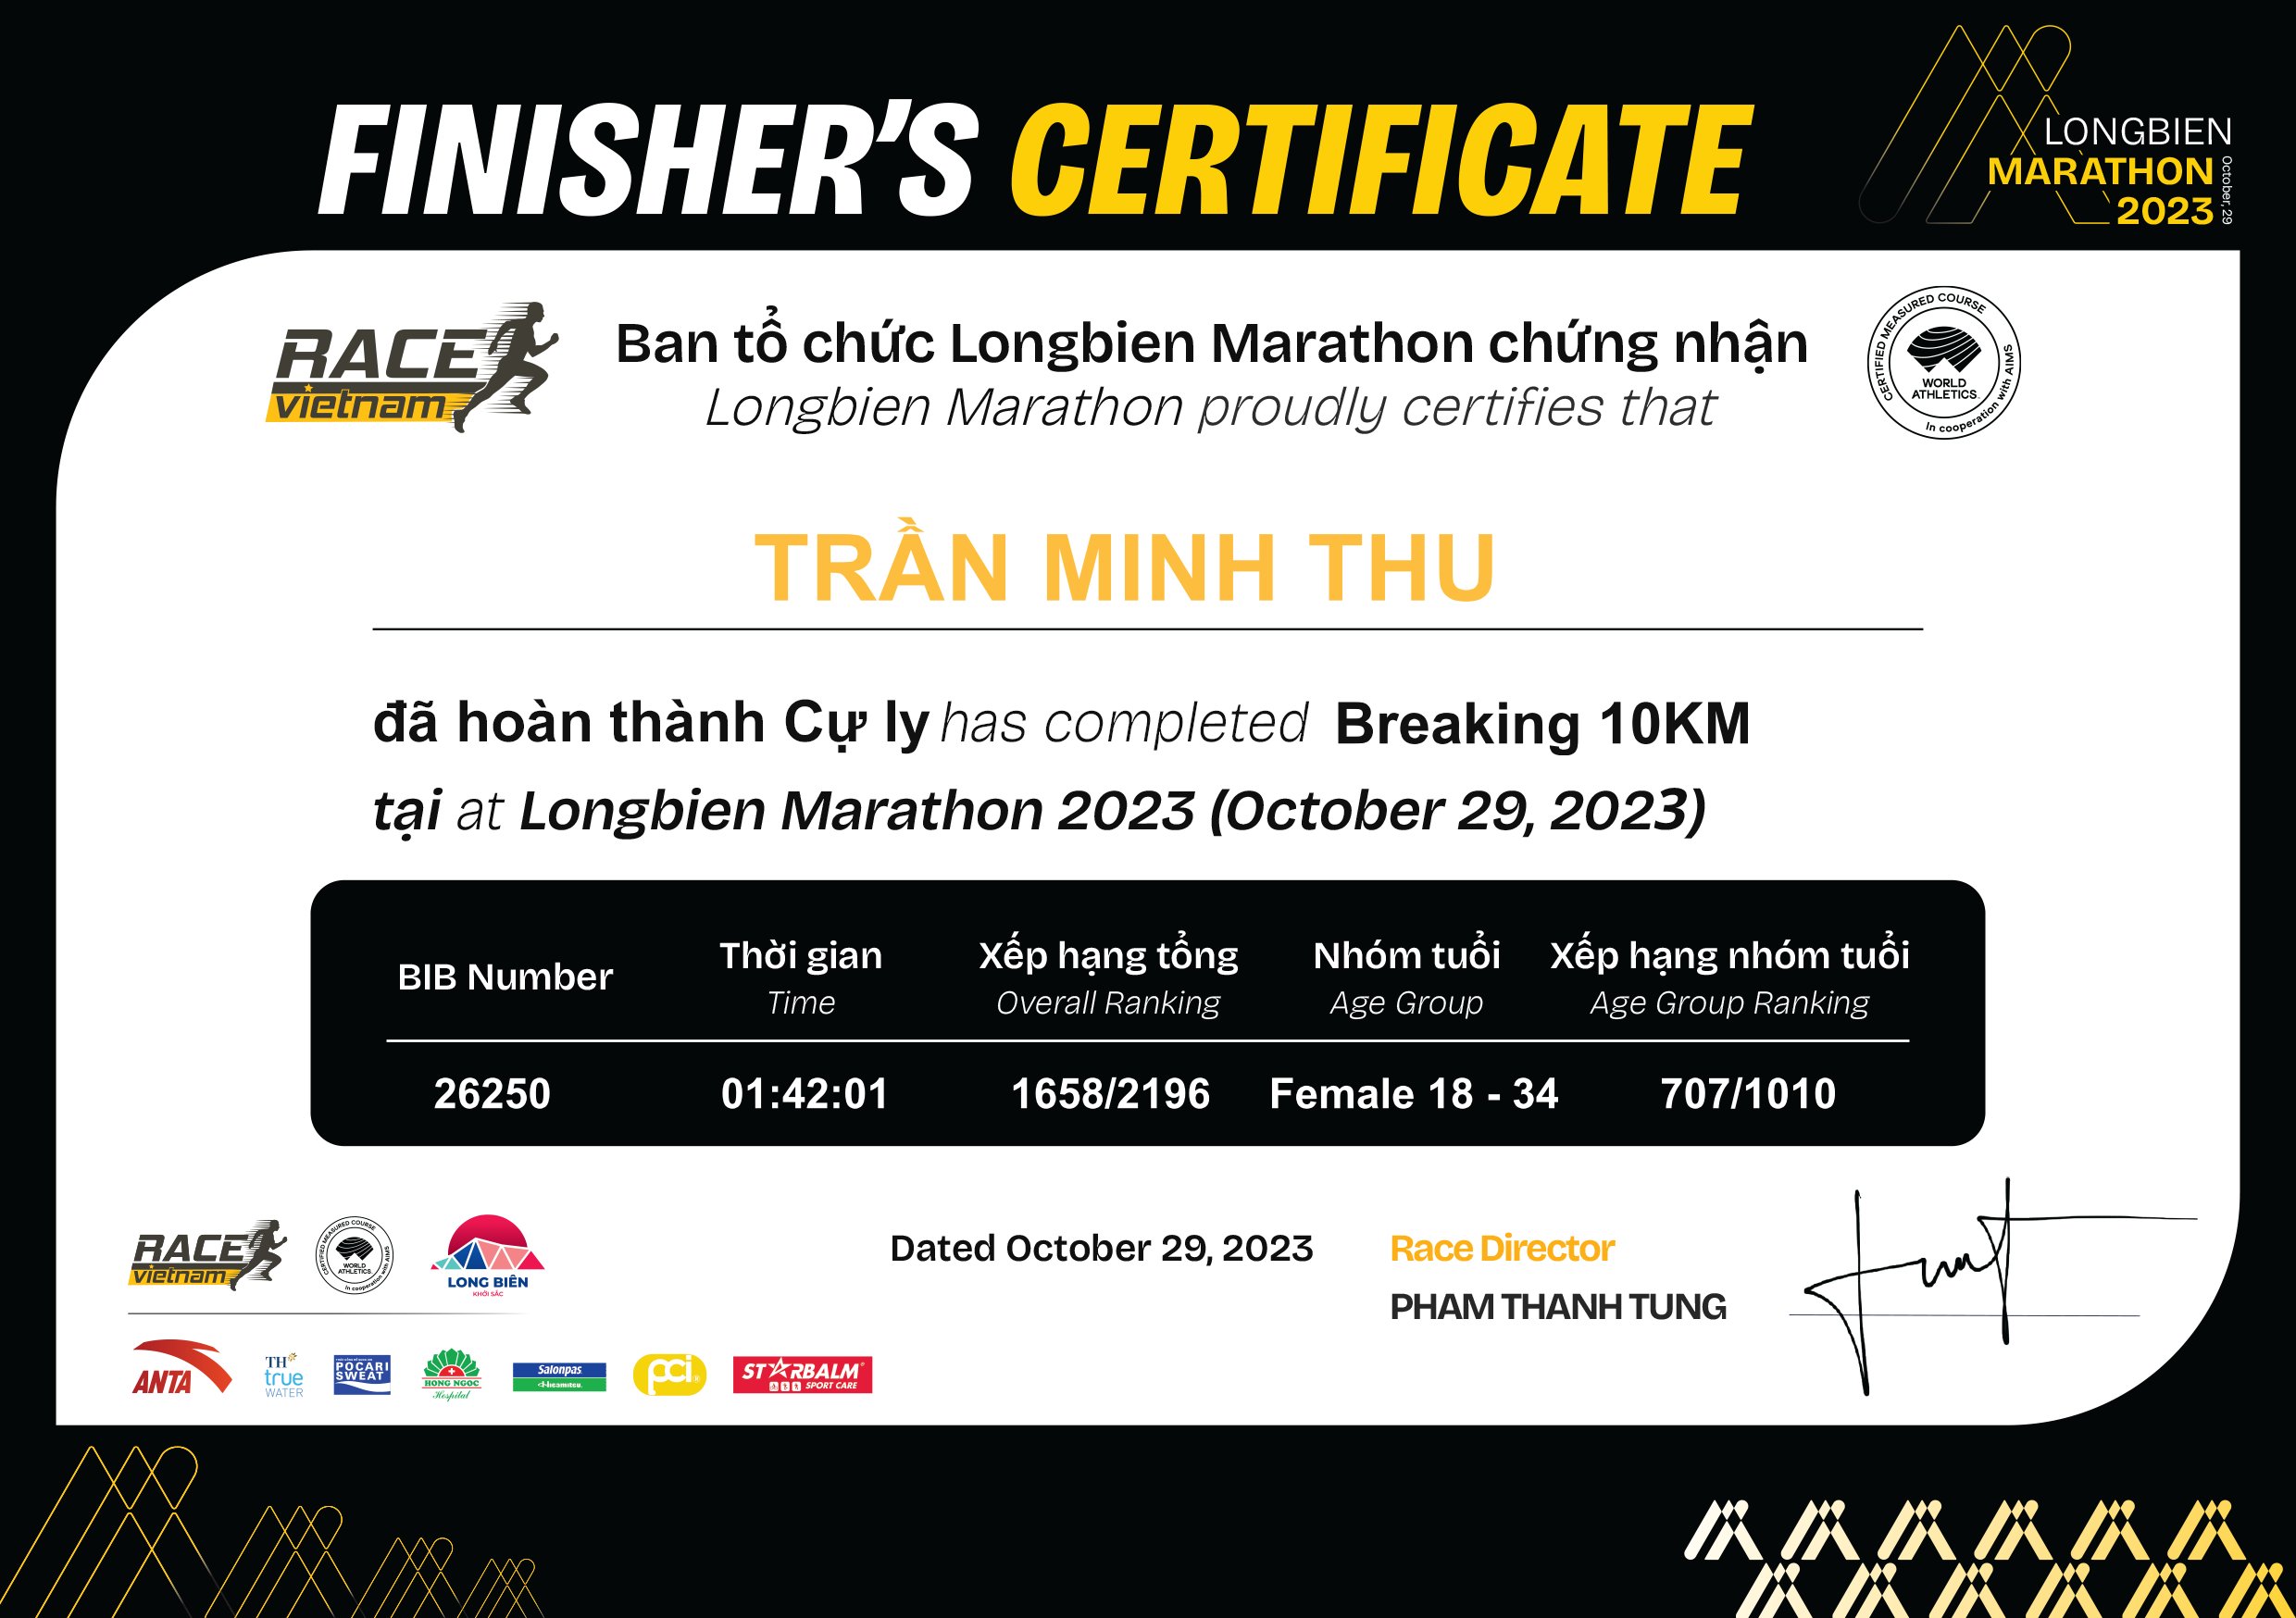 26250 - Trần Minh Thu